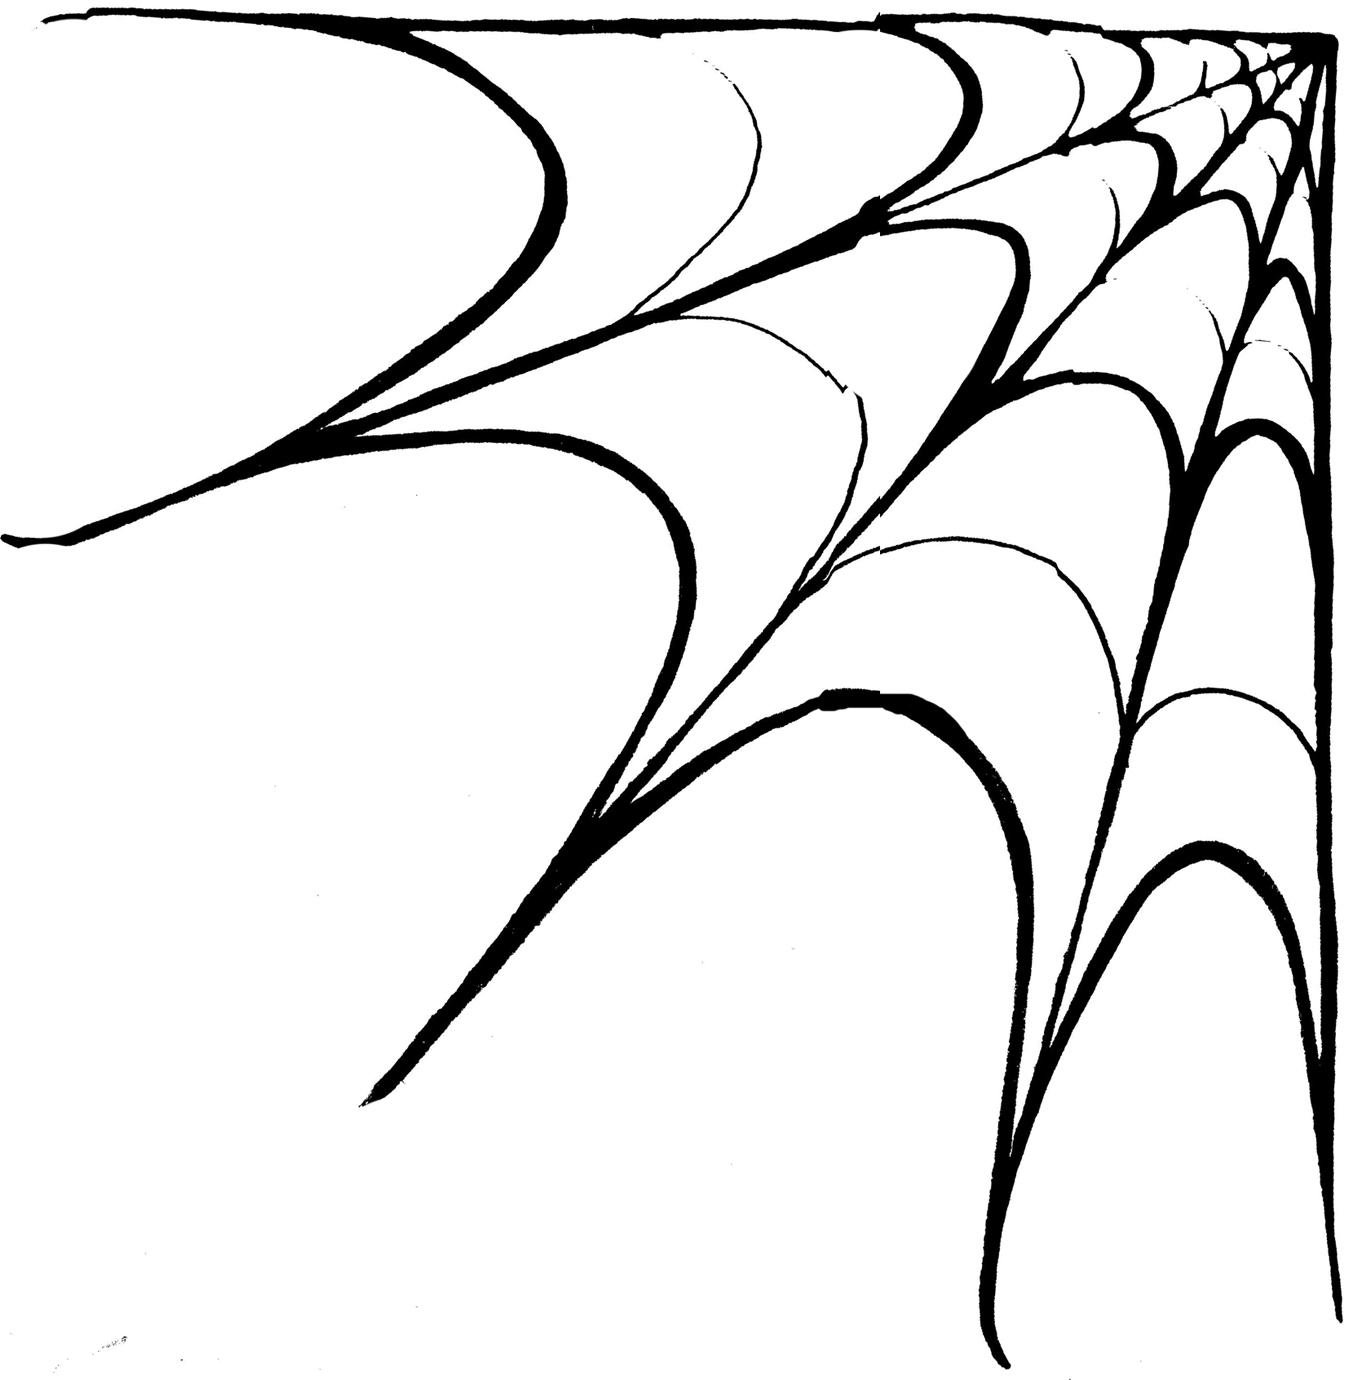 Spiders Web Clip Art - Cliparts.co